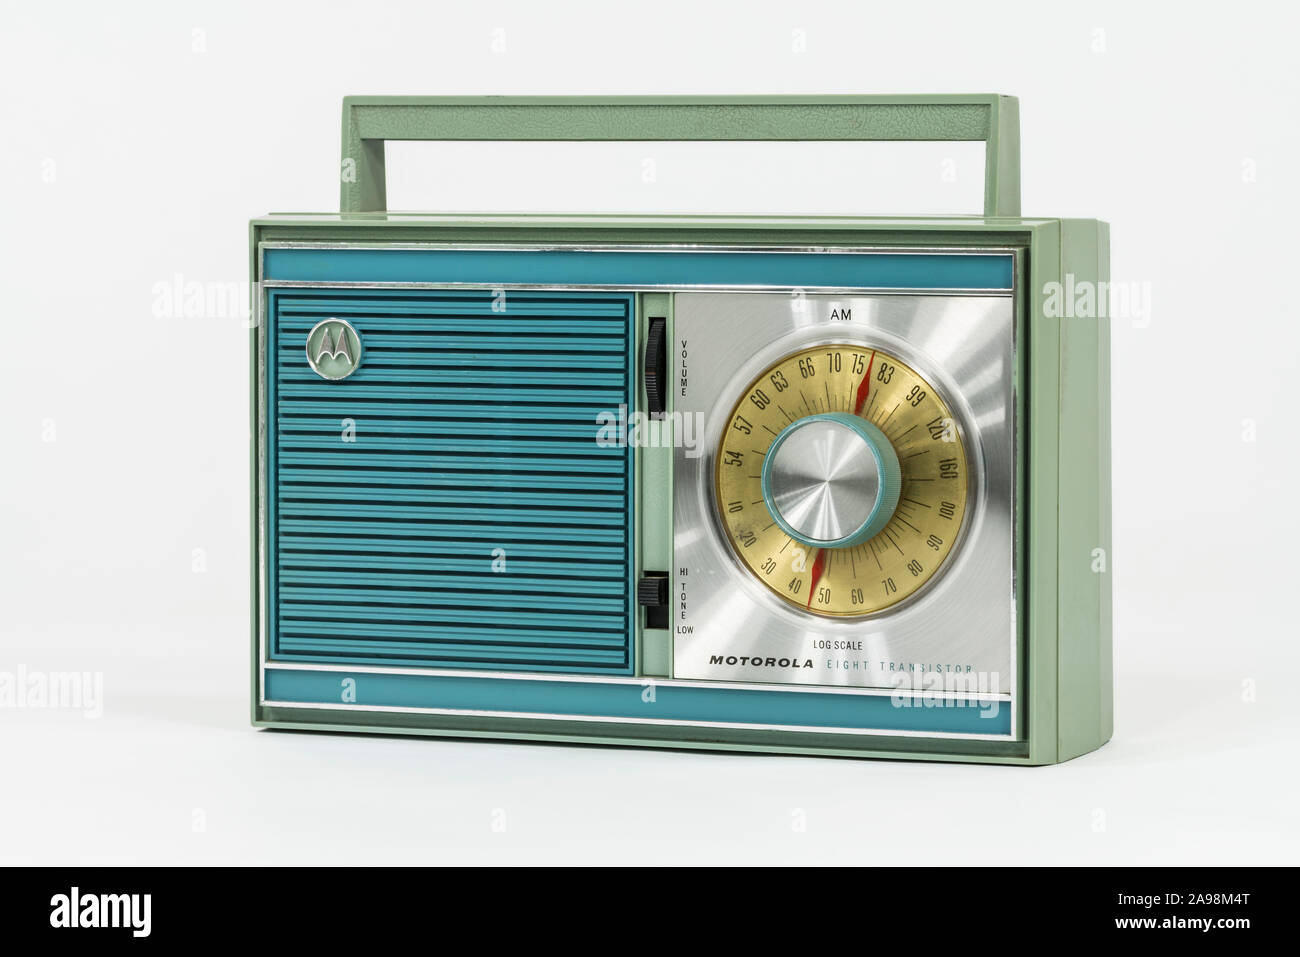 Los Angeles, Californie, USA - 12 novembre 2019 : rédaction d'illustration photographie de vintage transistor radio portable Motorola. Banque D'Images